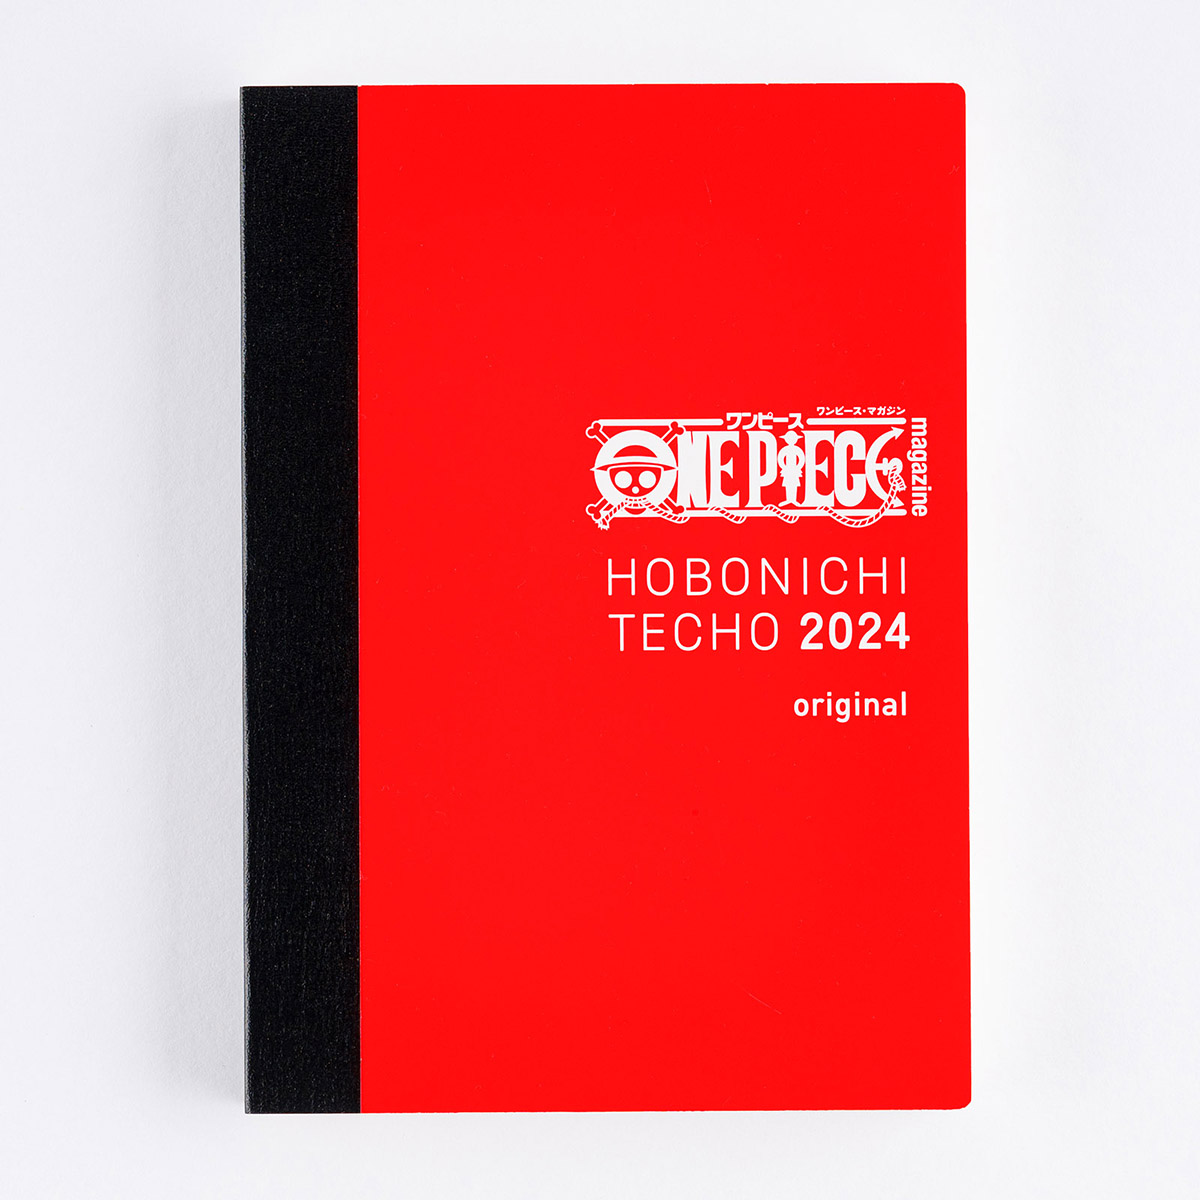 Original / HON - Hobonichi Techo Book Buying Guide